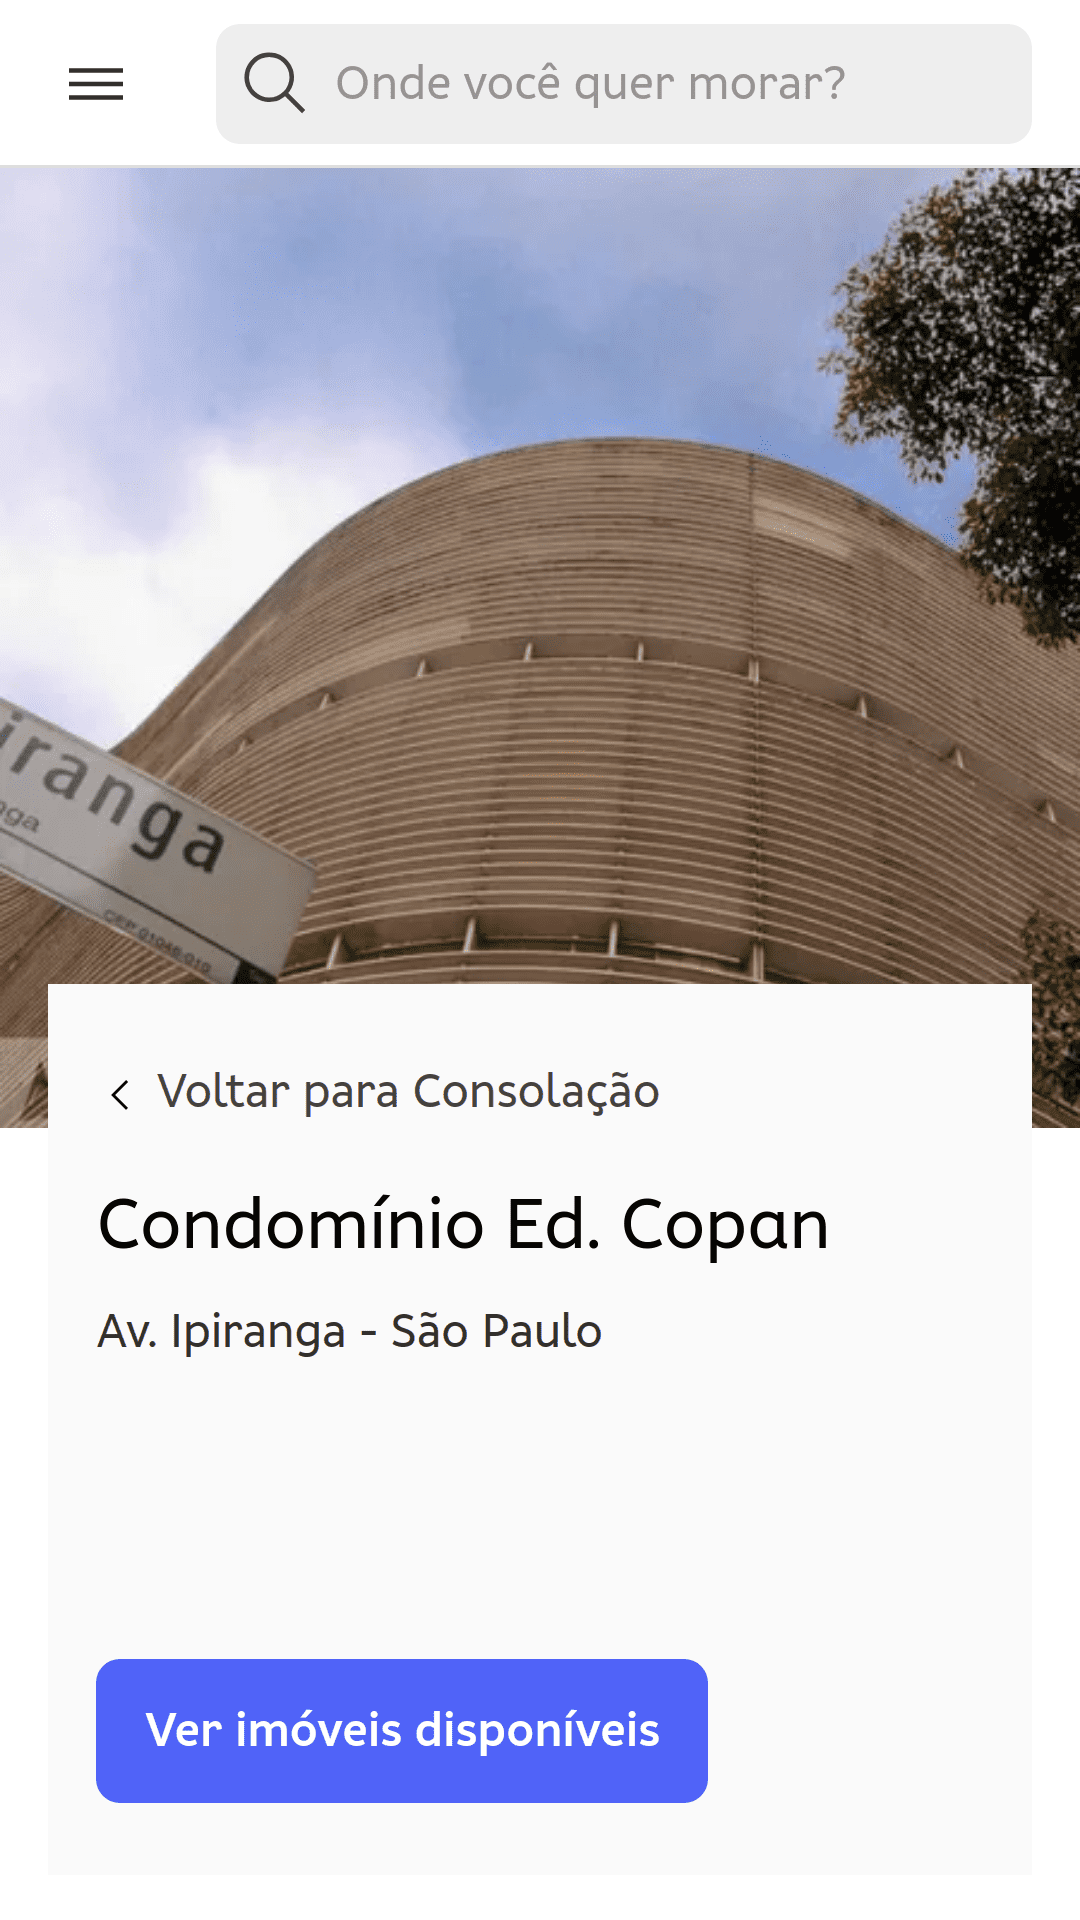 Edifício Copan (브라질 상파울루)의 콘도 페이지입니다. 지면에서 찍은 사진은 건물 구조물의 곡선을 보여줍니다.